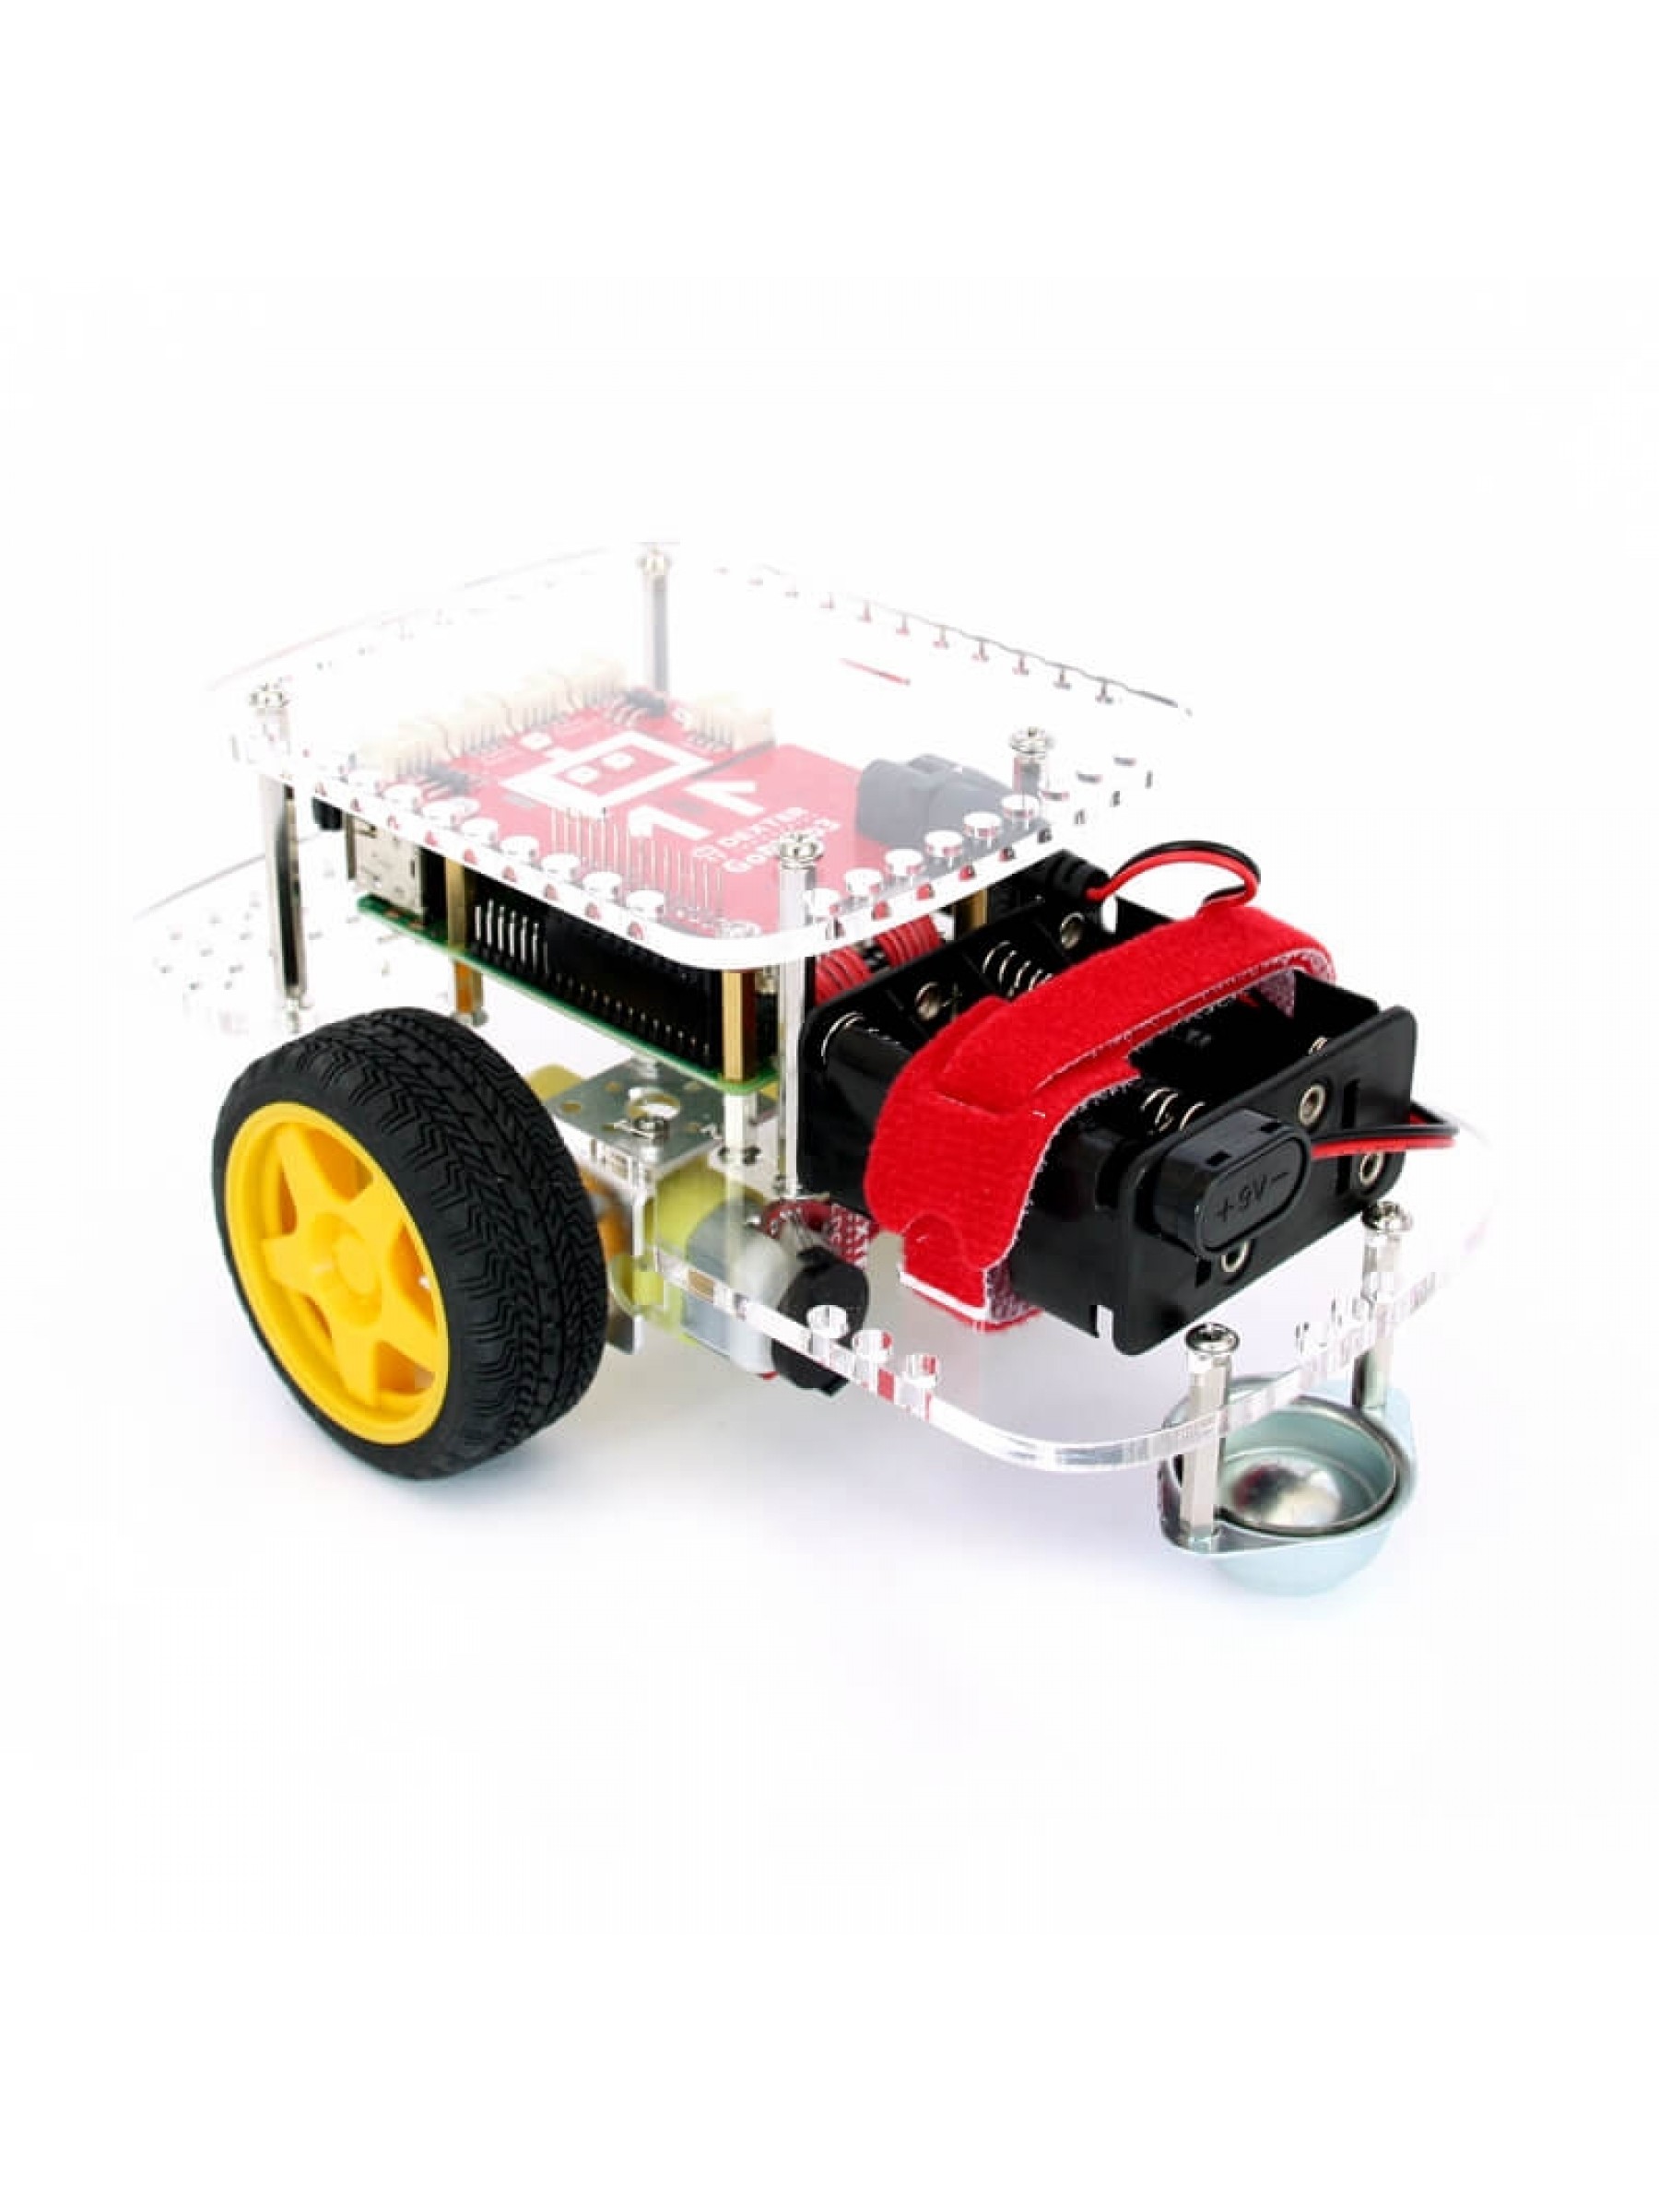 University Engineering Robot Kit - Dexter Industries